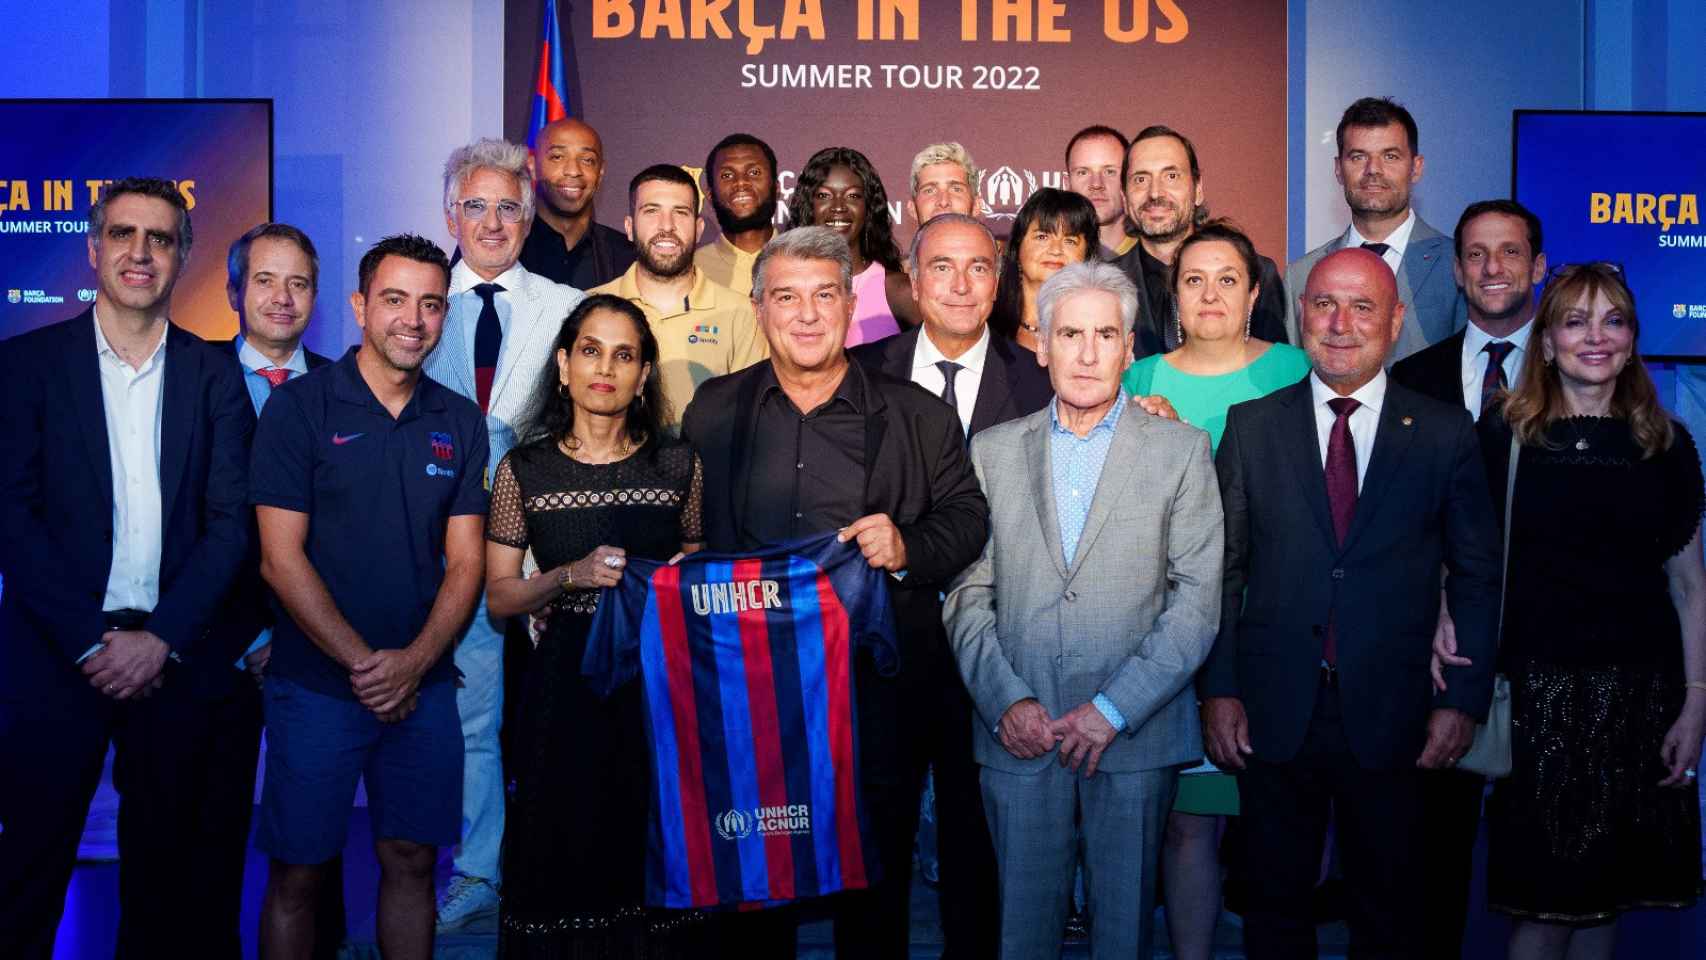 El Barça de Laporta, junto a Xavi y varios miembros de su junta directiva, reduce la deuda del club y celebra el acuerdo con ACNUR / FCB